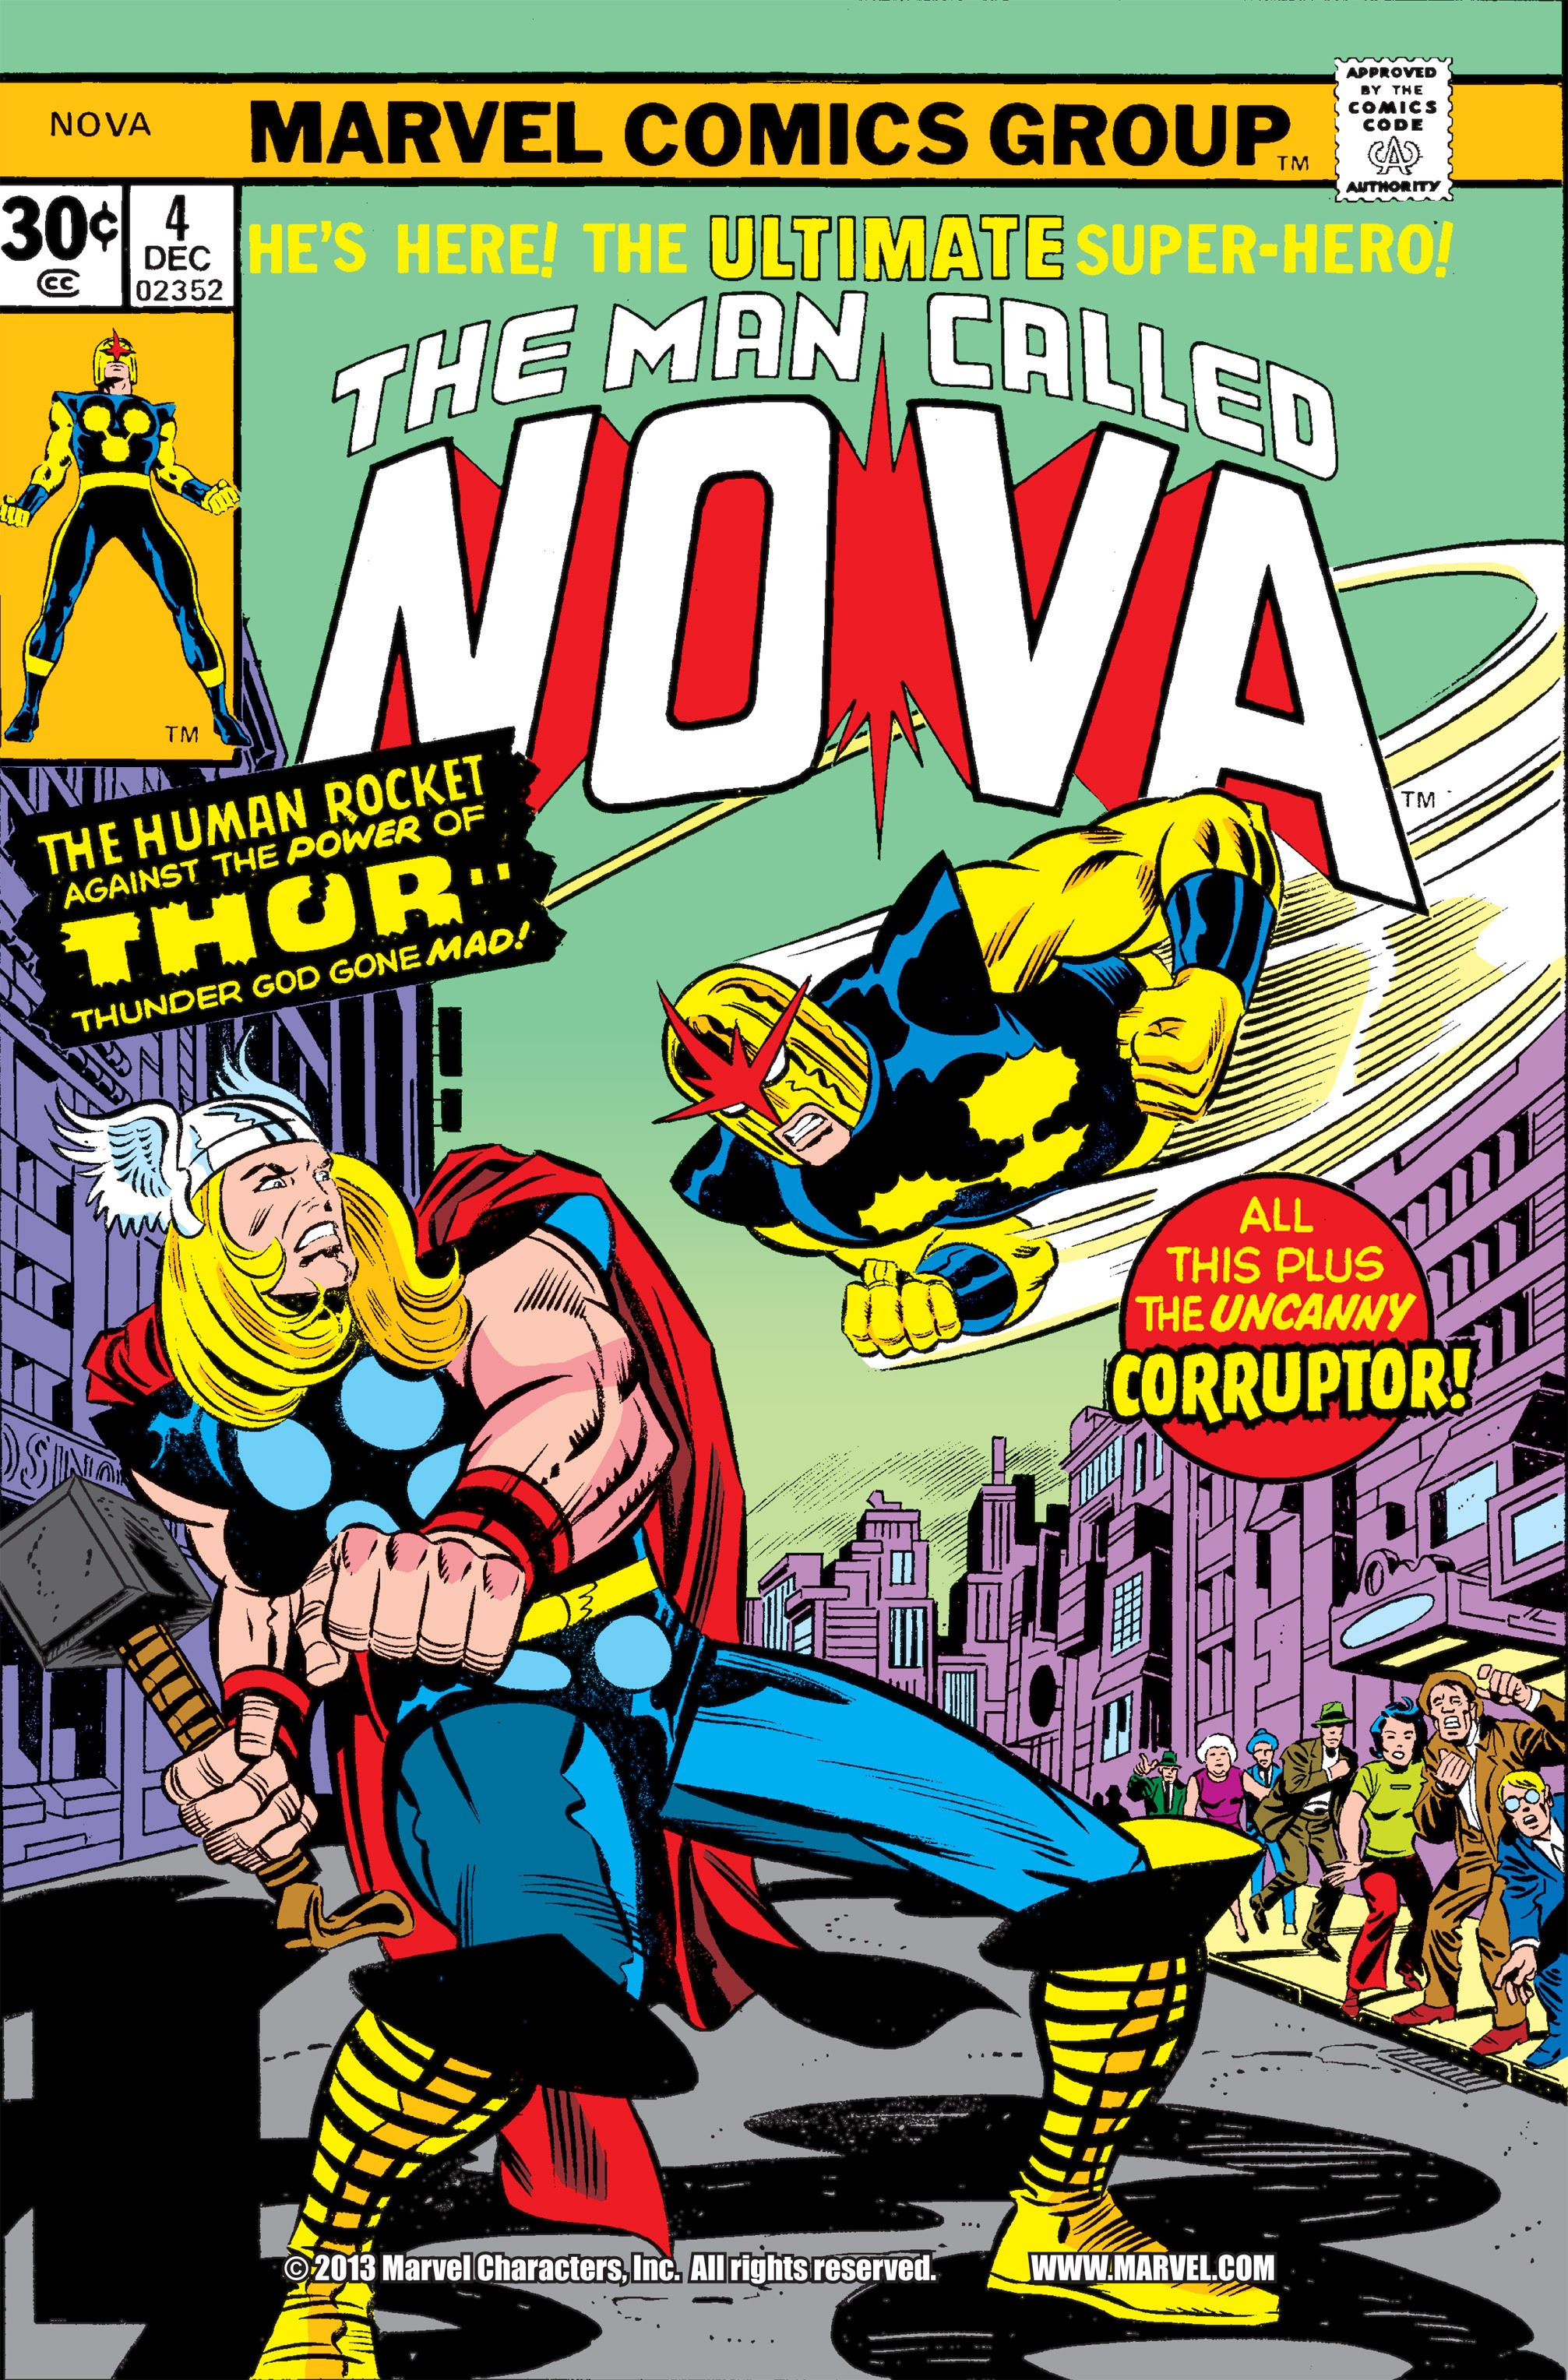 Nova, Vol. 1 by Dan Abnett